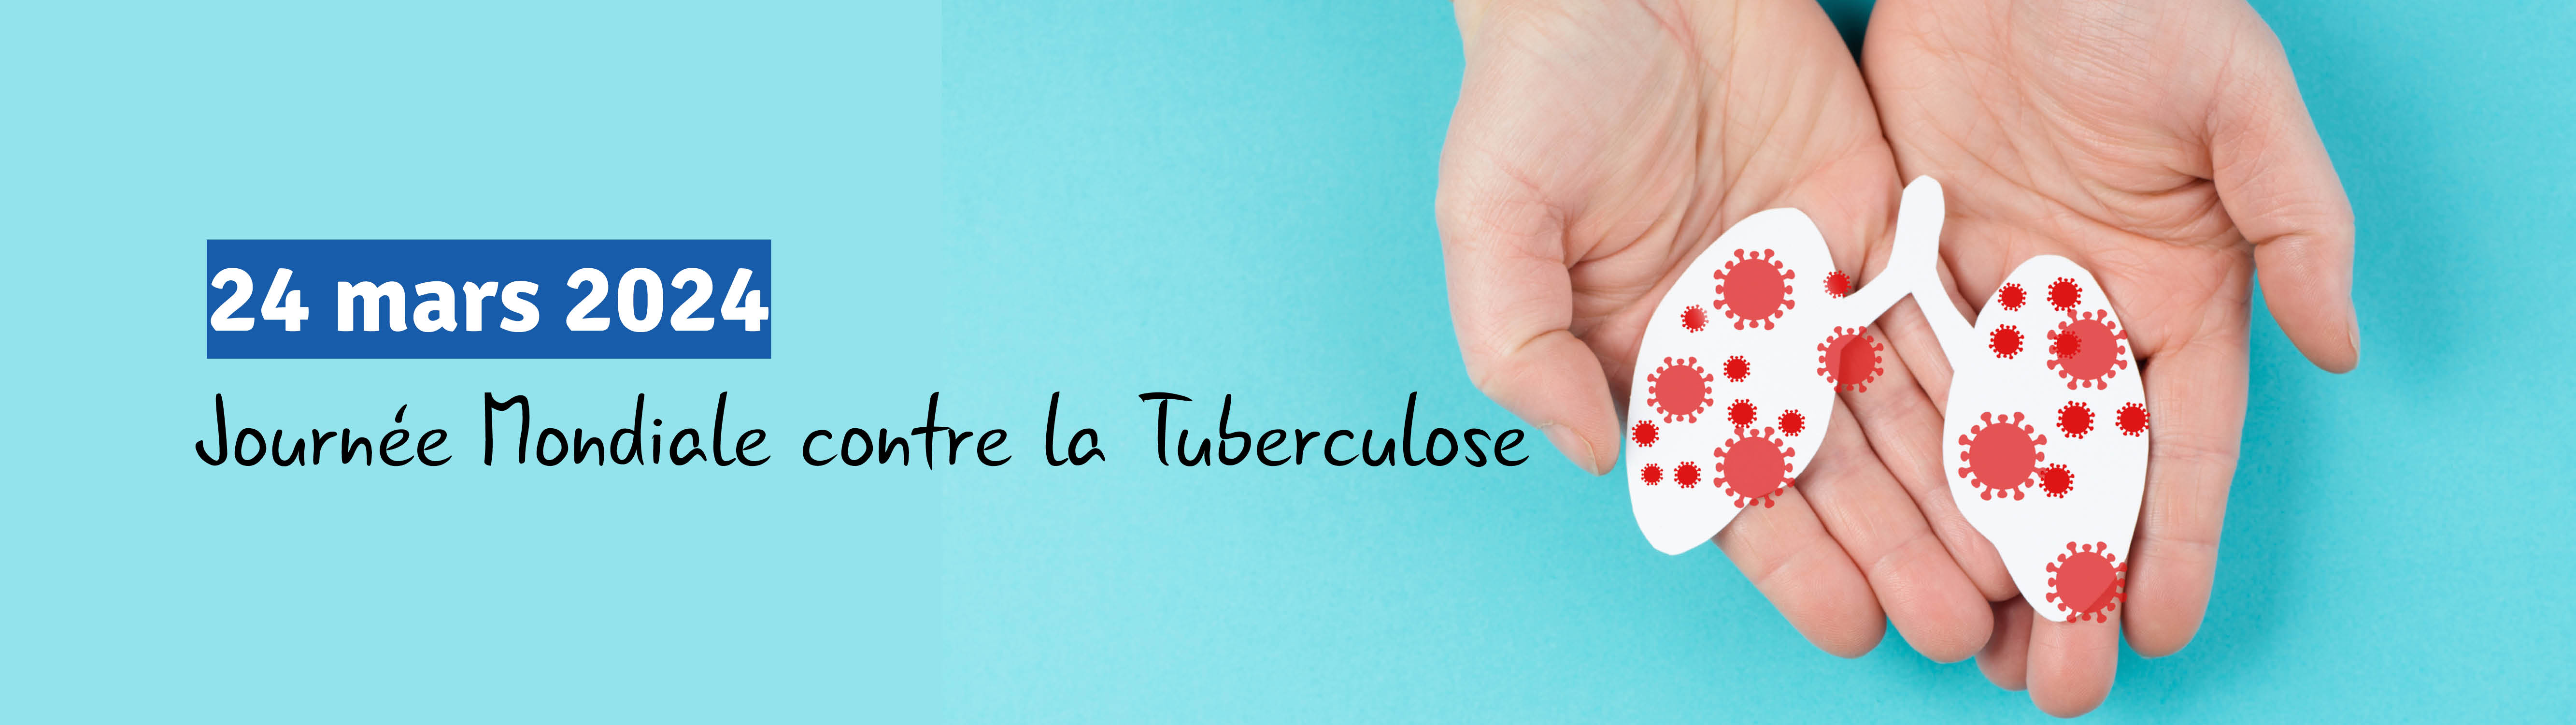 Journee Mondiale contre la Tuberculose